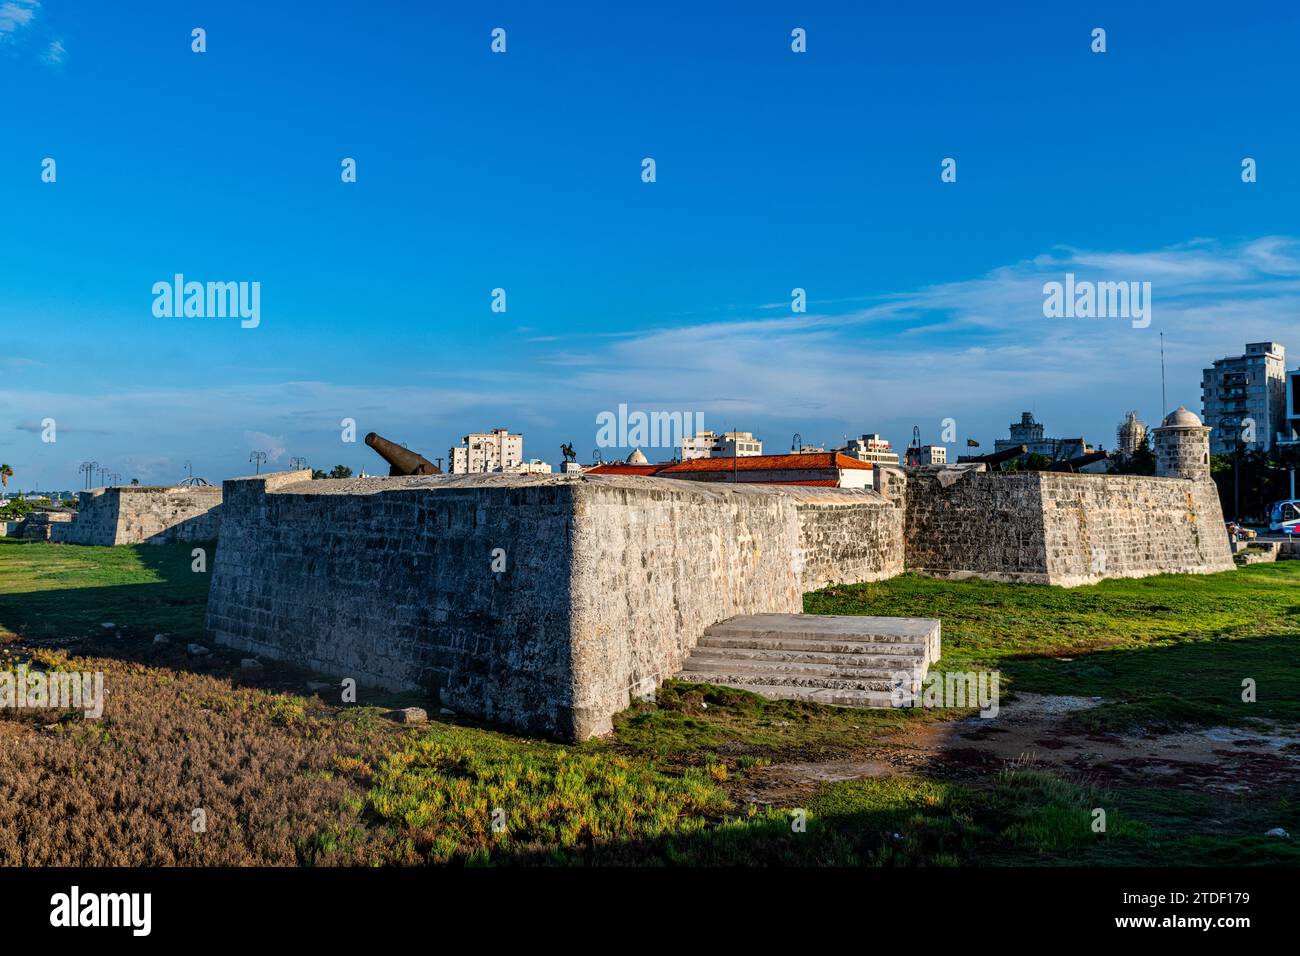 Castello de l'Avana della forza reale (Castillo de la Real Fuerza), sito patrimonio dell'umanità dell'UNESCO, l'Avana, Cuba, Indie occidentali, America centrale Foto Stock